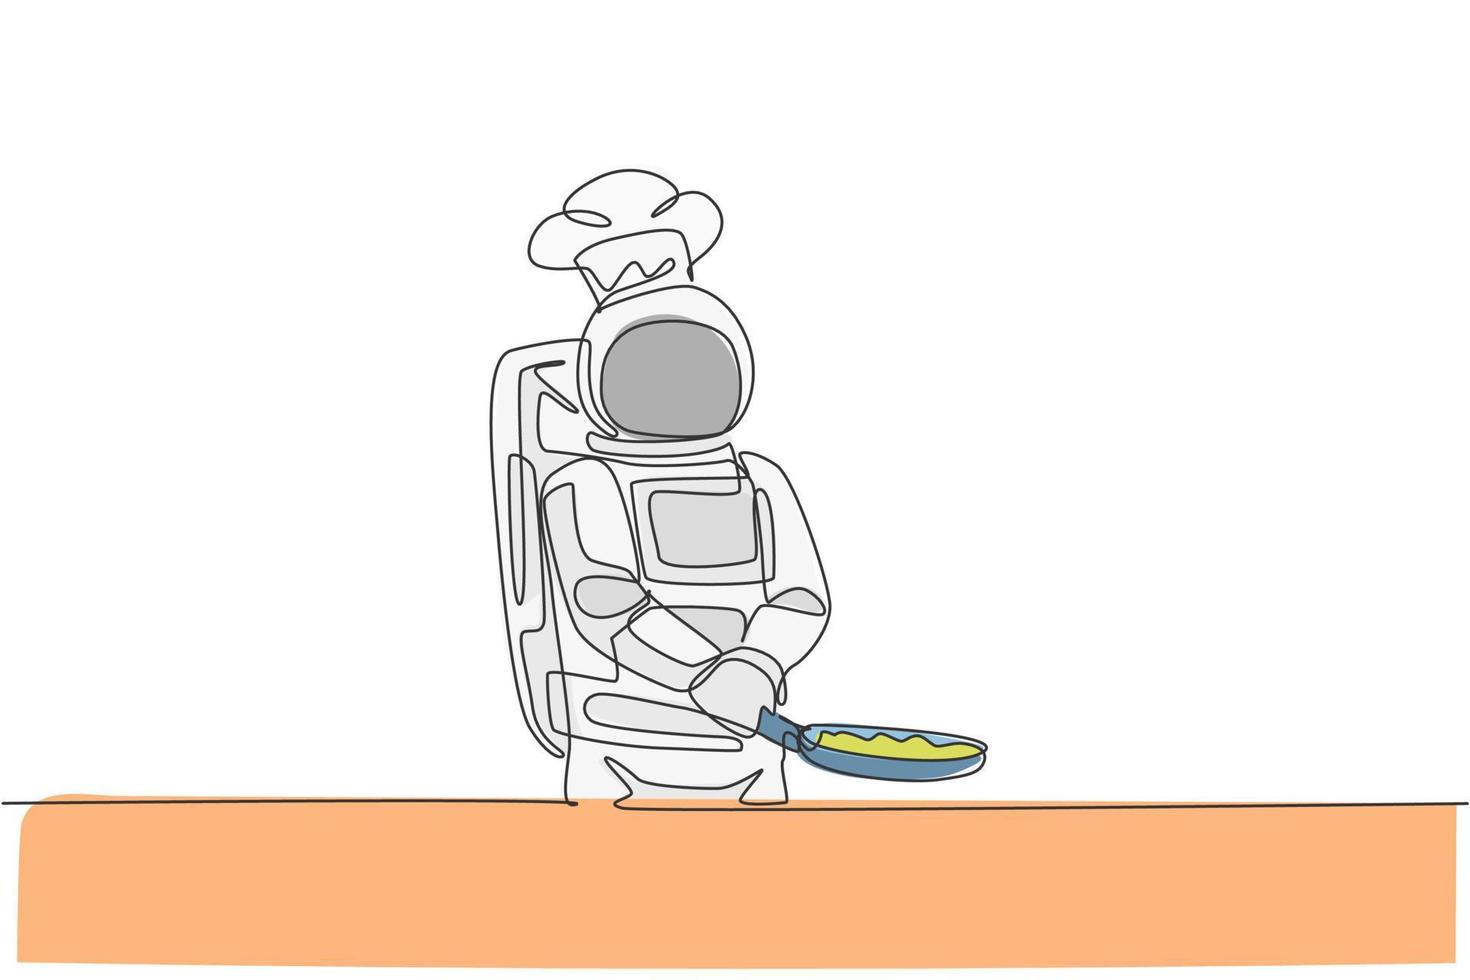 un disegno a linea continua astronauta chef che frigge un delizioso piatto per cena con padella. menu di cibo di cucina sana sul concetto di ristorante spaziale. illustrazione vettoriale di disegno grafico di disegno grafico a linea singola dinamica